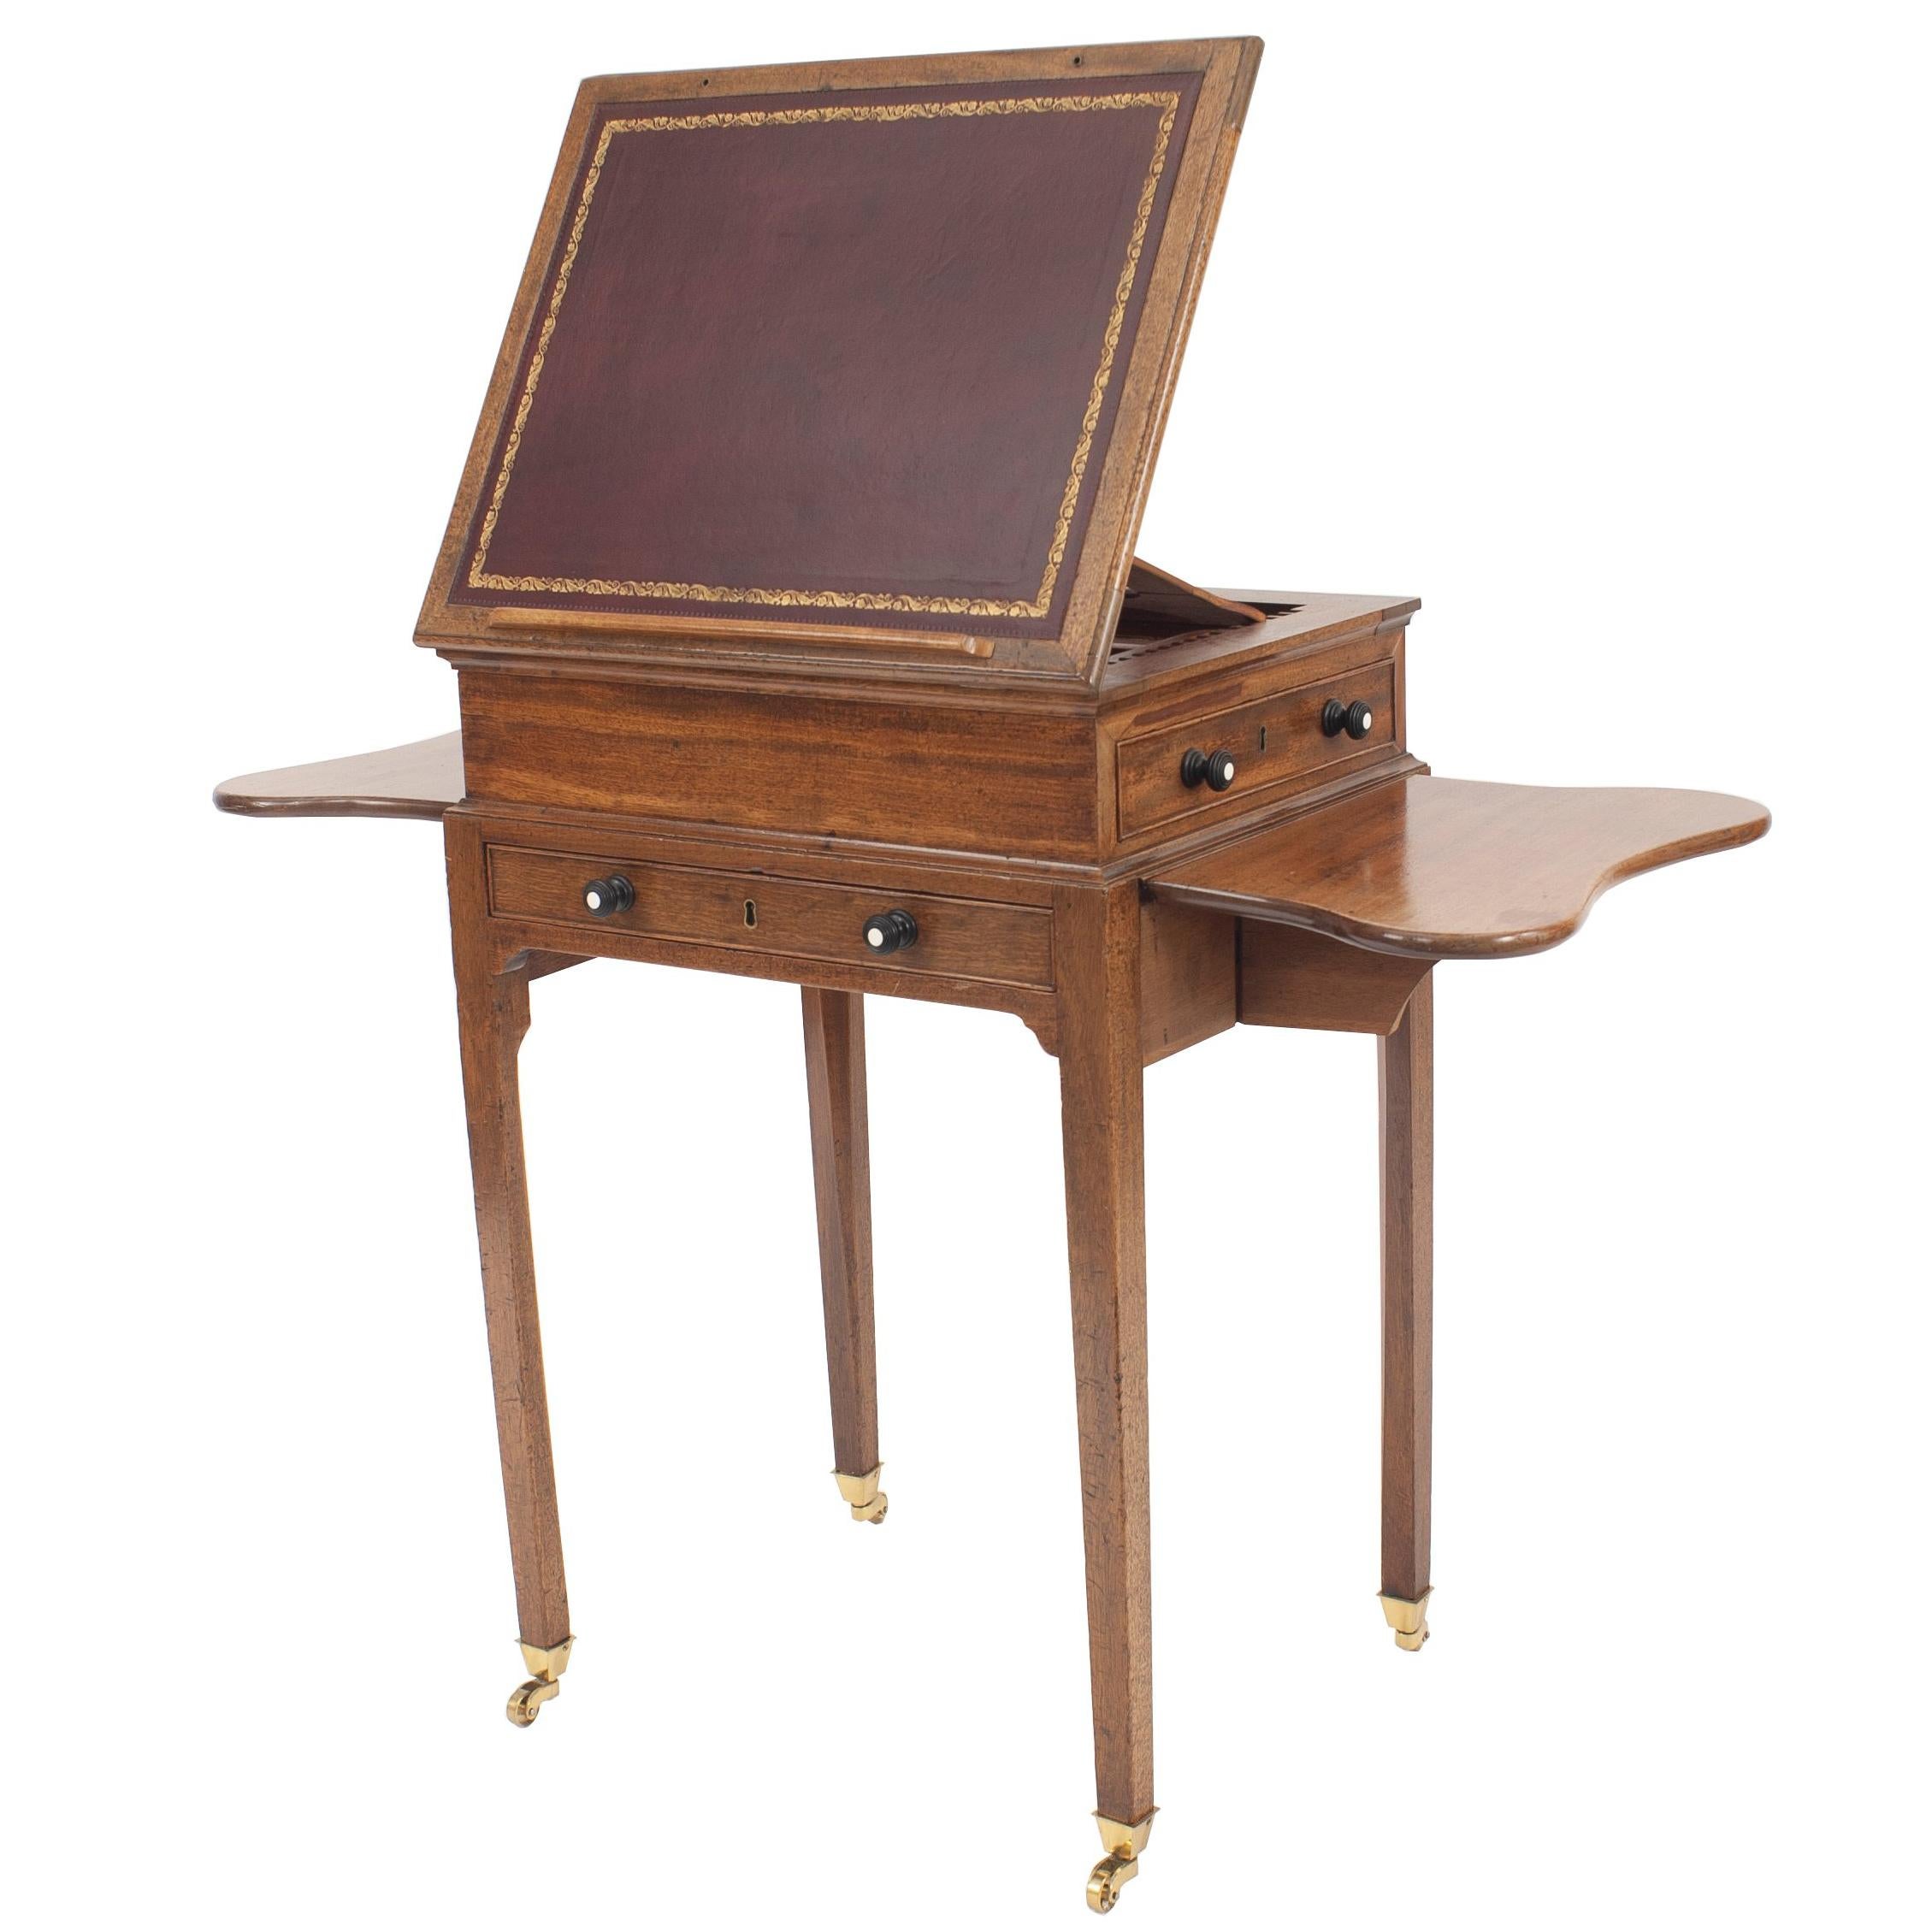 Englischer Beistelltisch oder Schreibtisch aus Nussbaumholz im georgianischen Stil